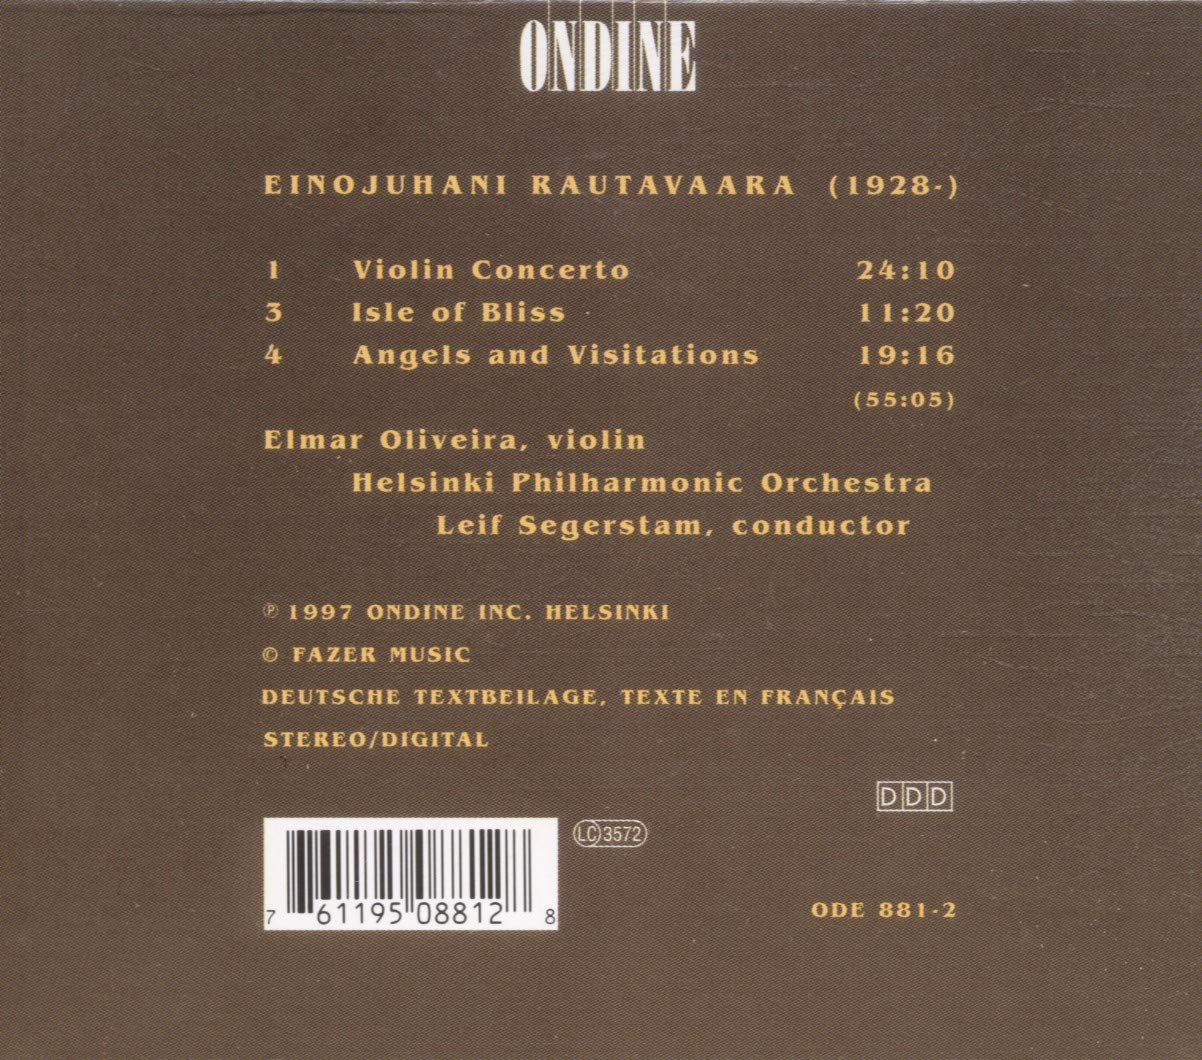 Rautavaara: Violin Concerto, Isle of Bliss - slide-1